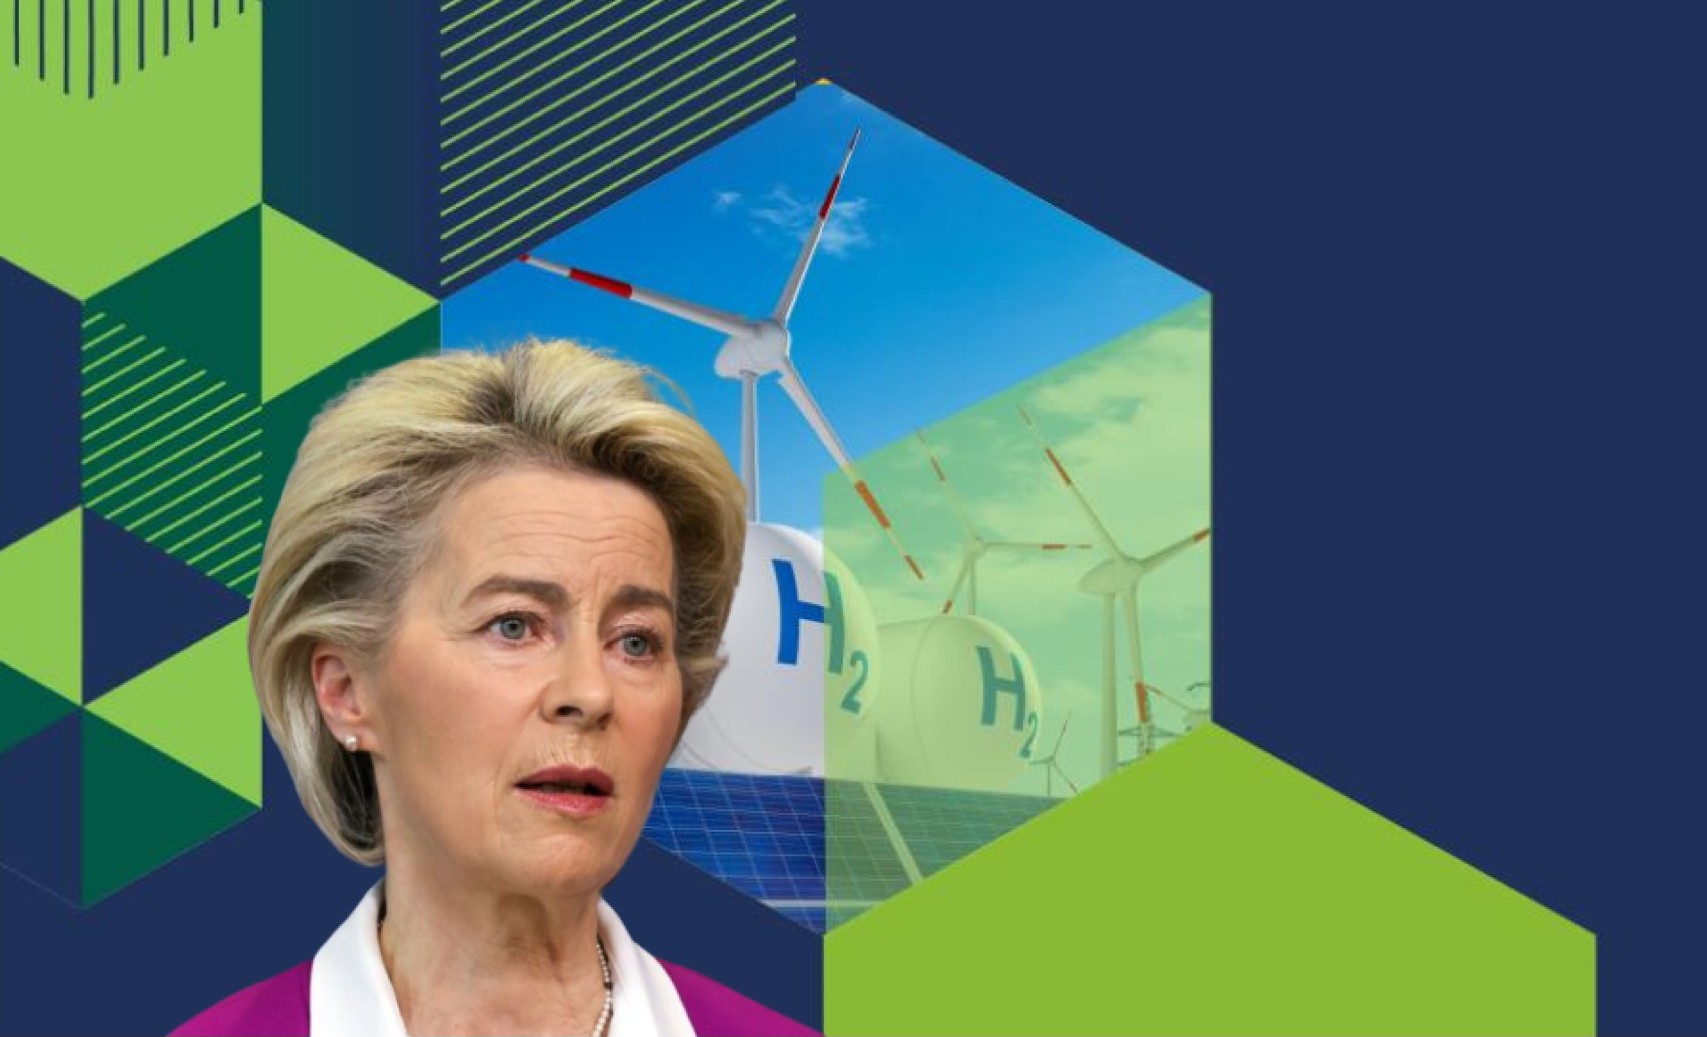 Σημαντικό το ανανεώσιμο υδρογόνο για το ενεργειακό μείγμα της Ευρώπης © energy.ec.europa.eu/EPA/YVES HERMAN/powergame.gr